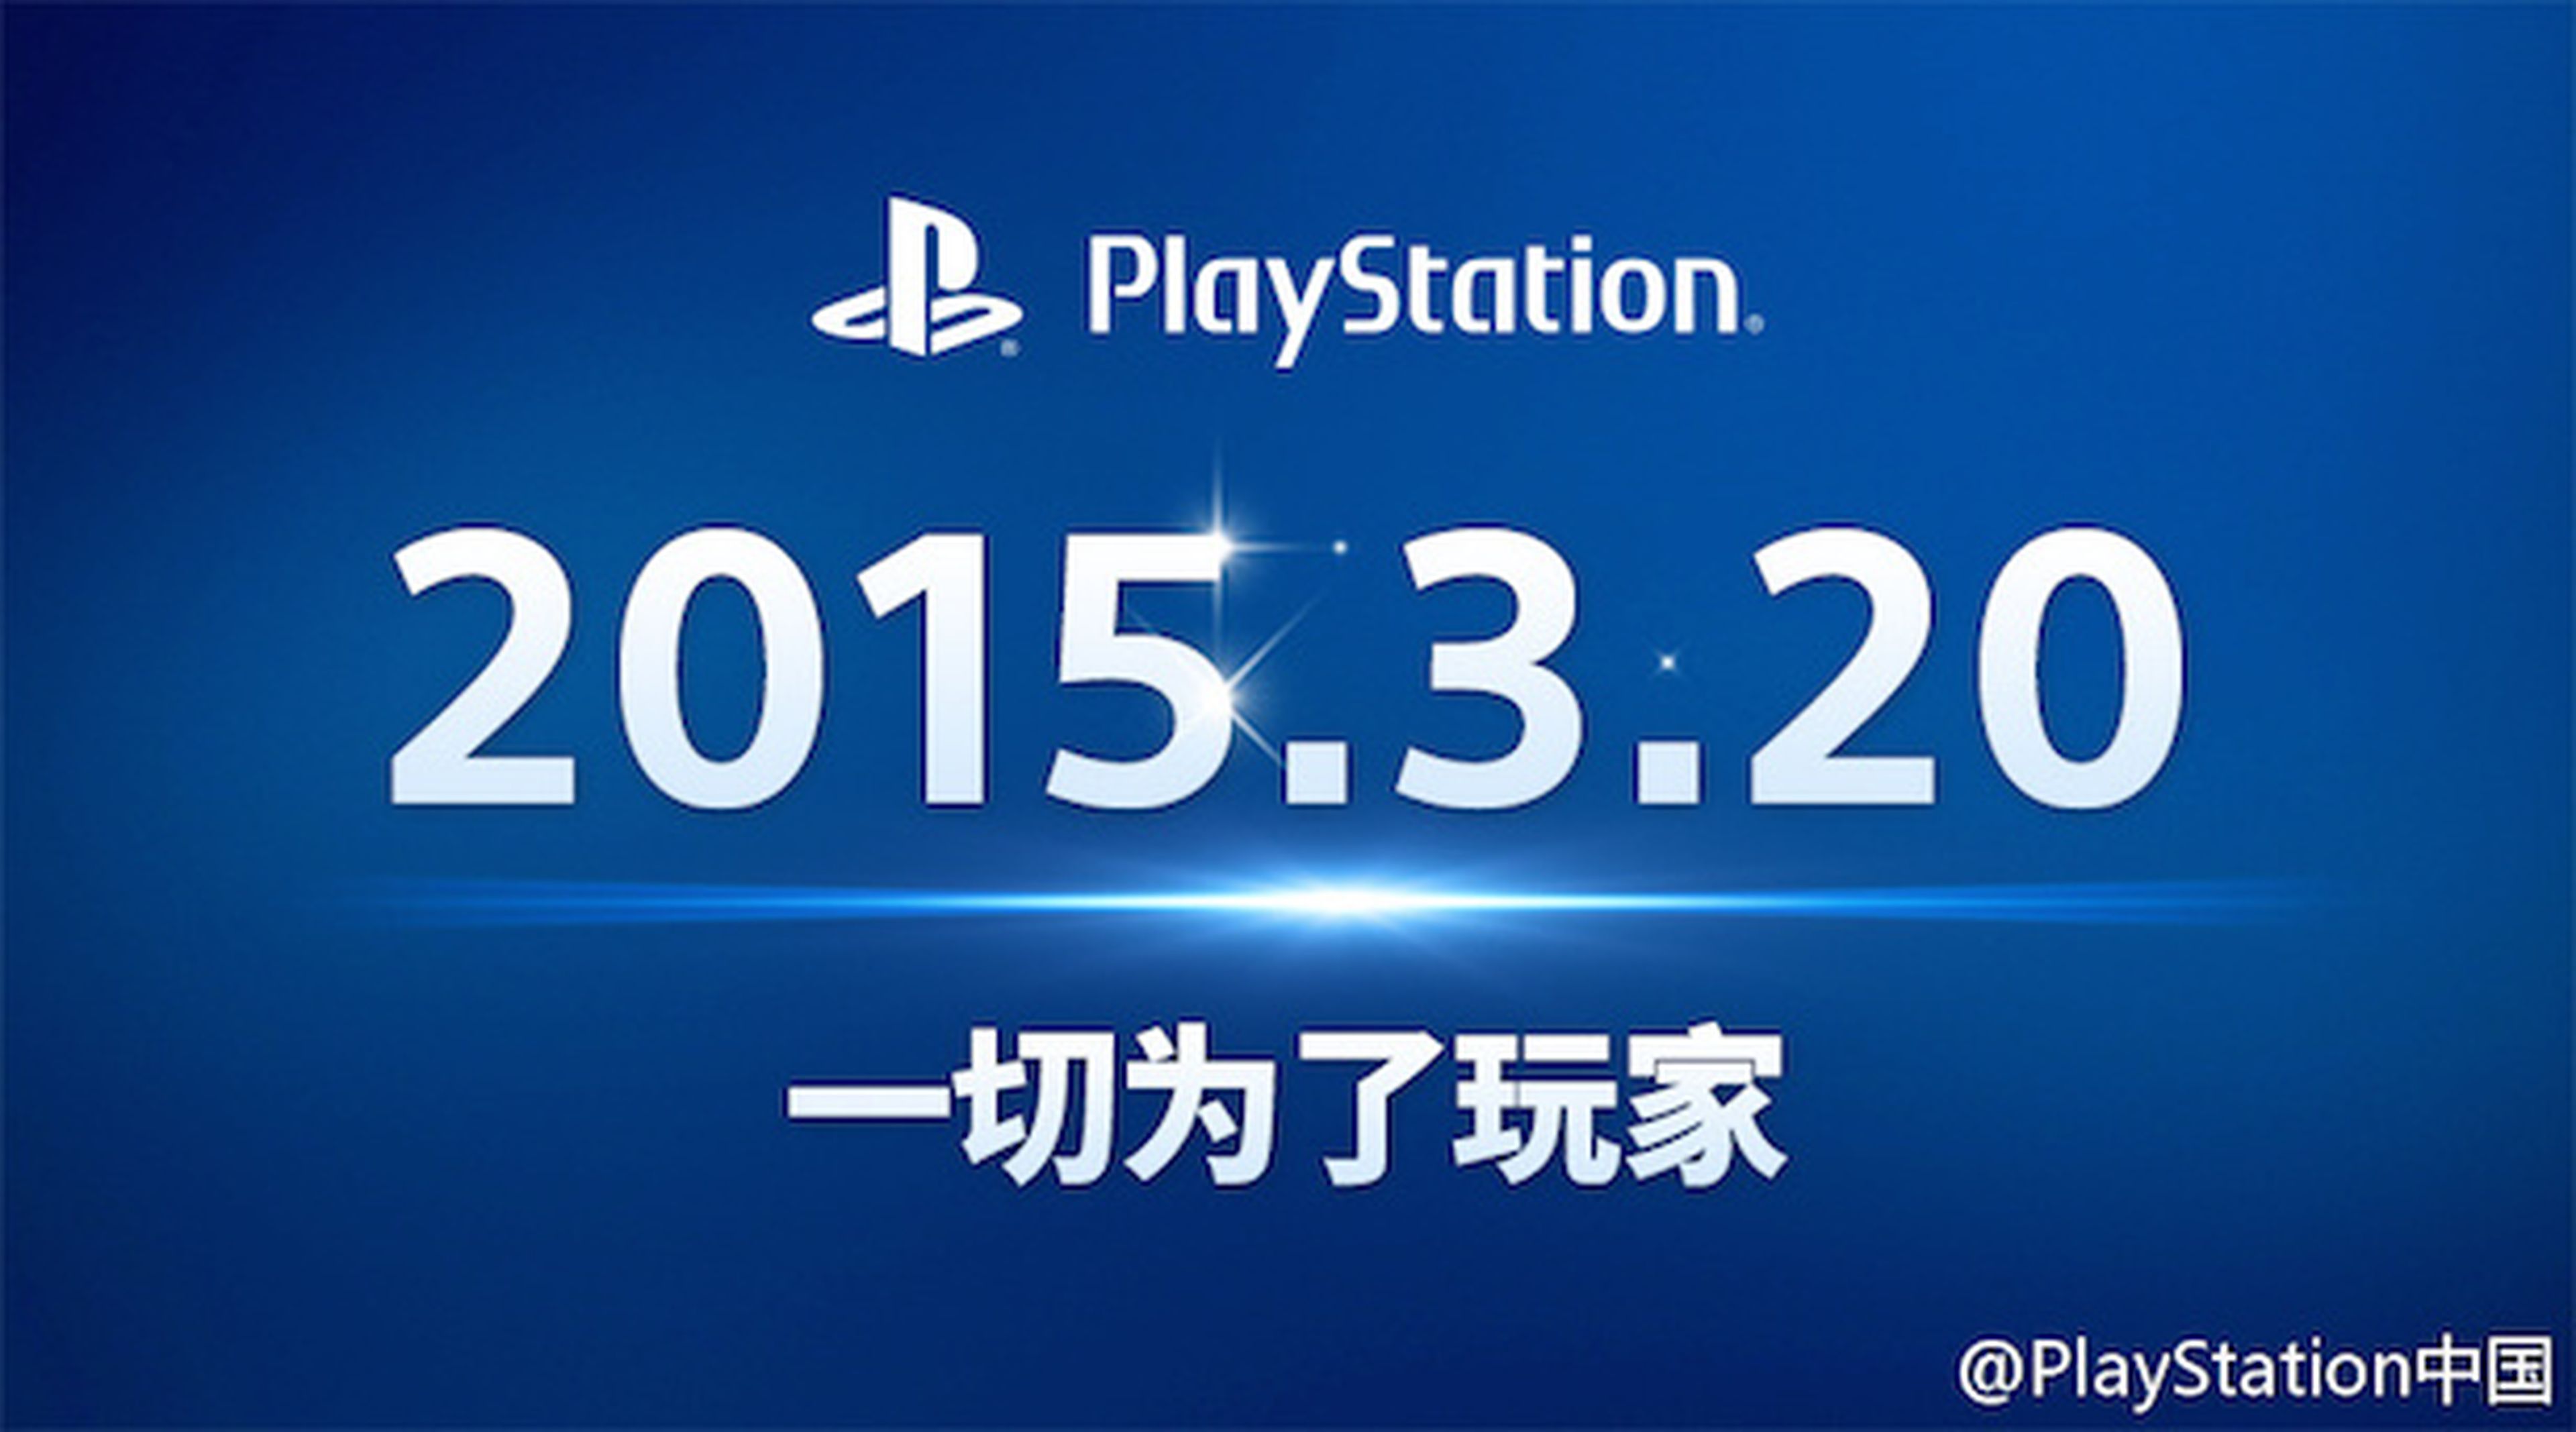 PS4 y PS Vita llegarán a China el 20 de marzo